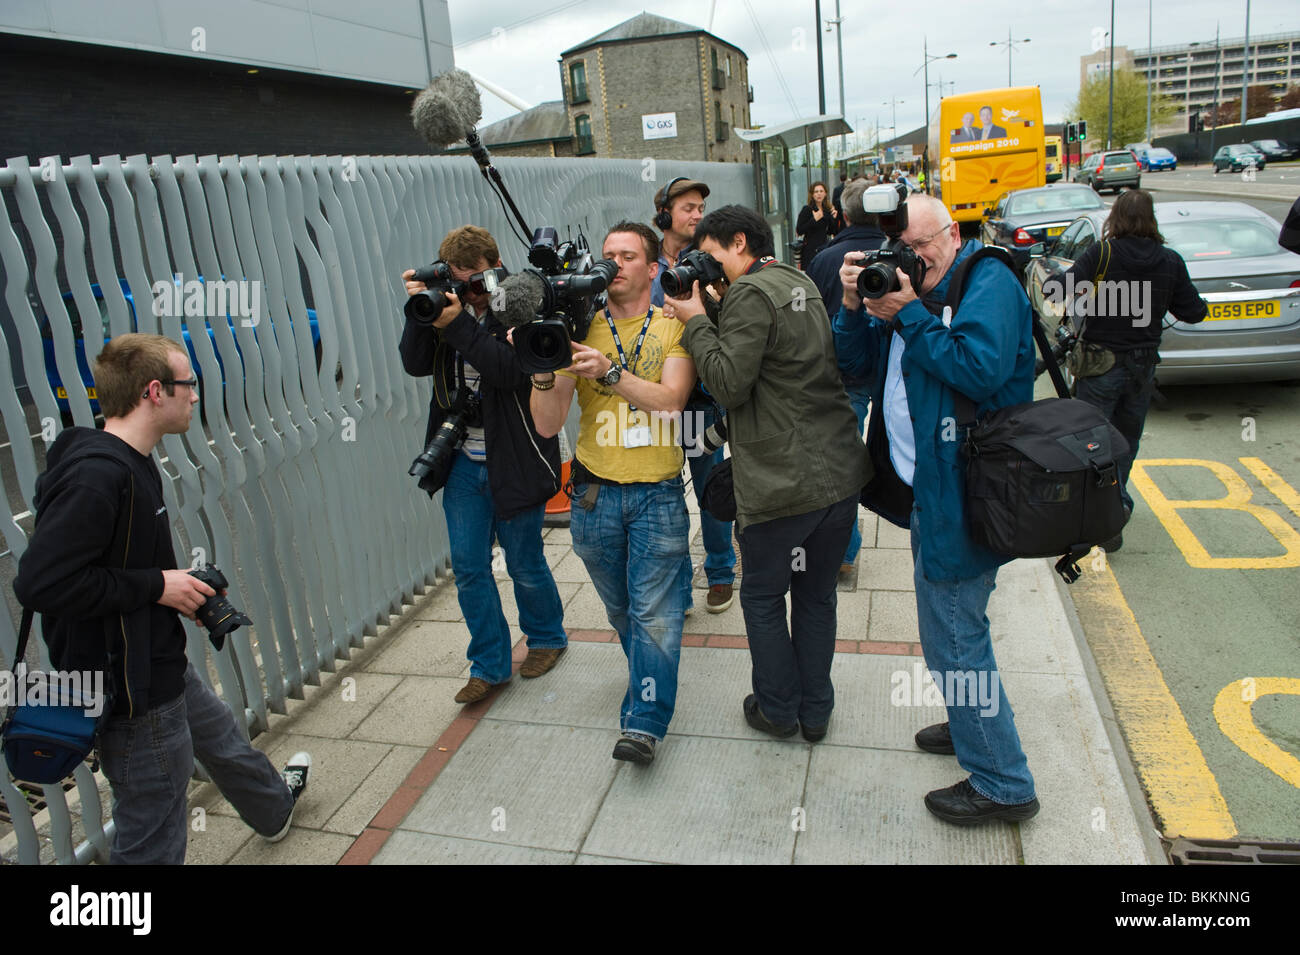 Los camarógrafos de medios fotografía liberal demócrata Nick Clegg en una campaña electoral visita a Newport South Wales UK Foto de stock